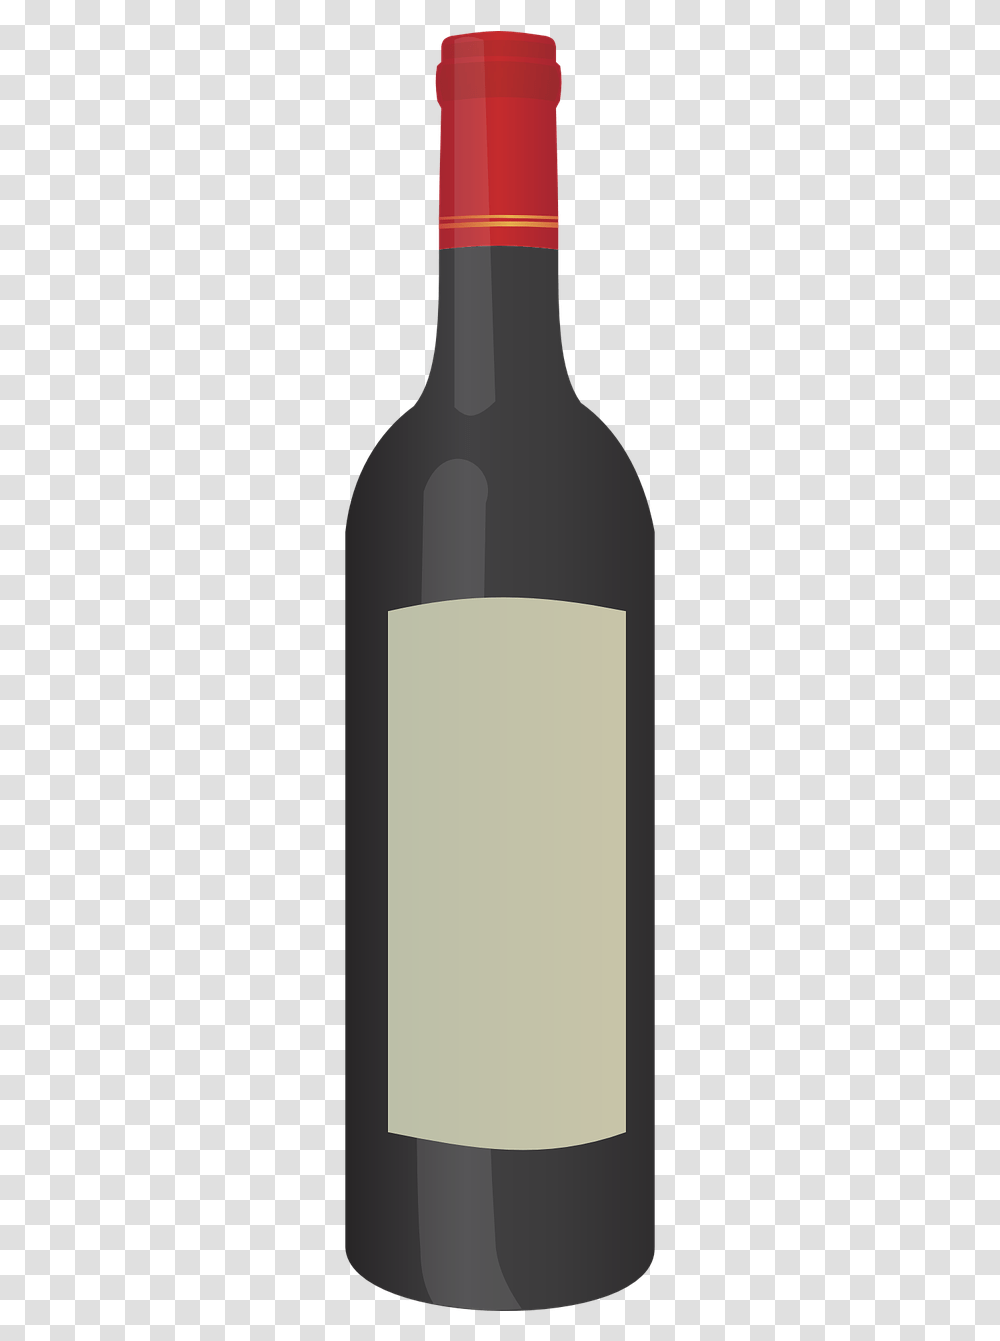 Red Wine Bottle Clipart, Alcohol, Beverage, Drink, Label Transparent Png